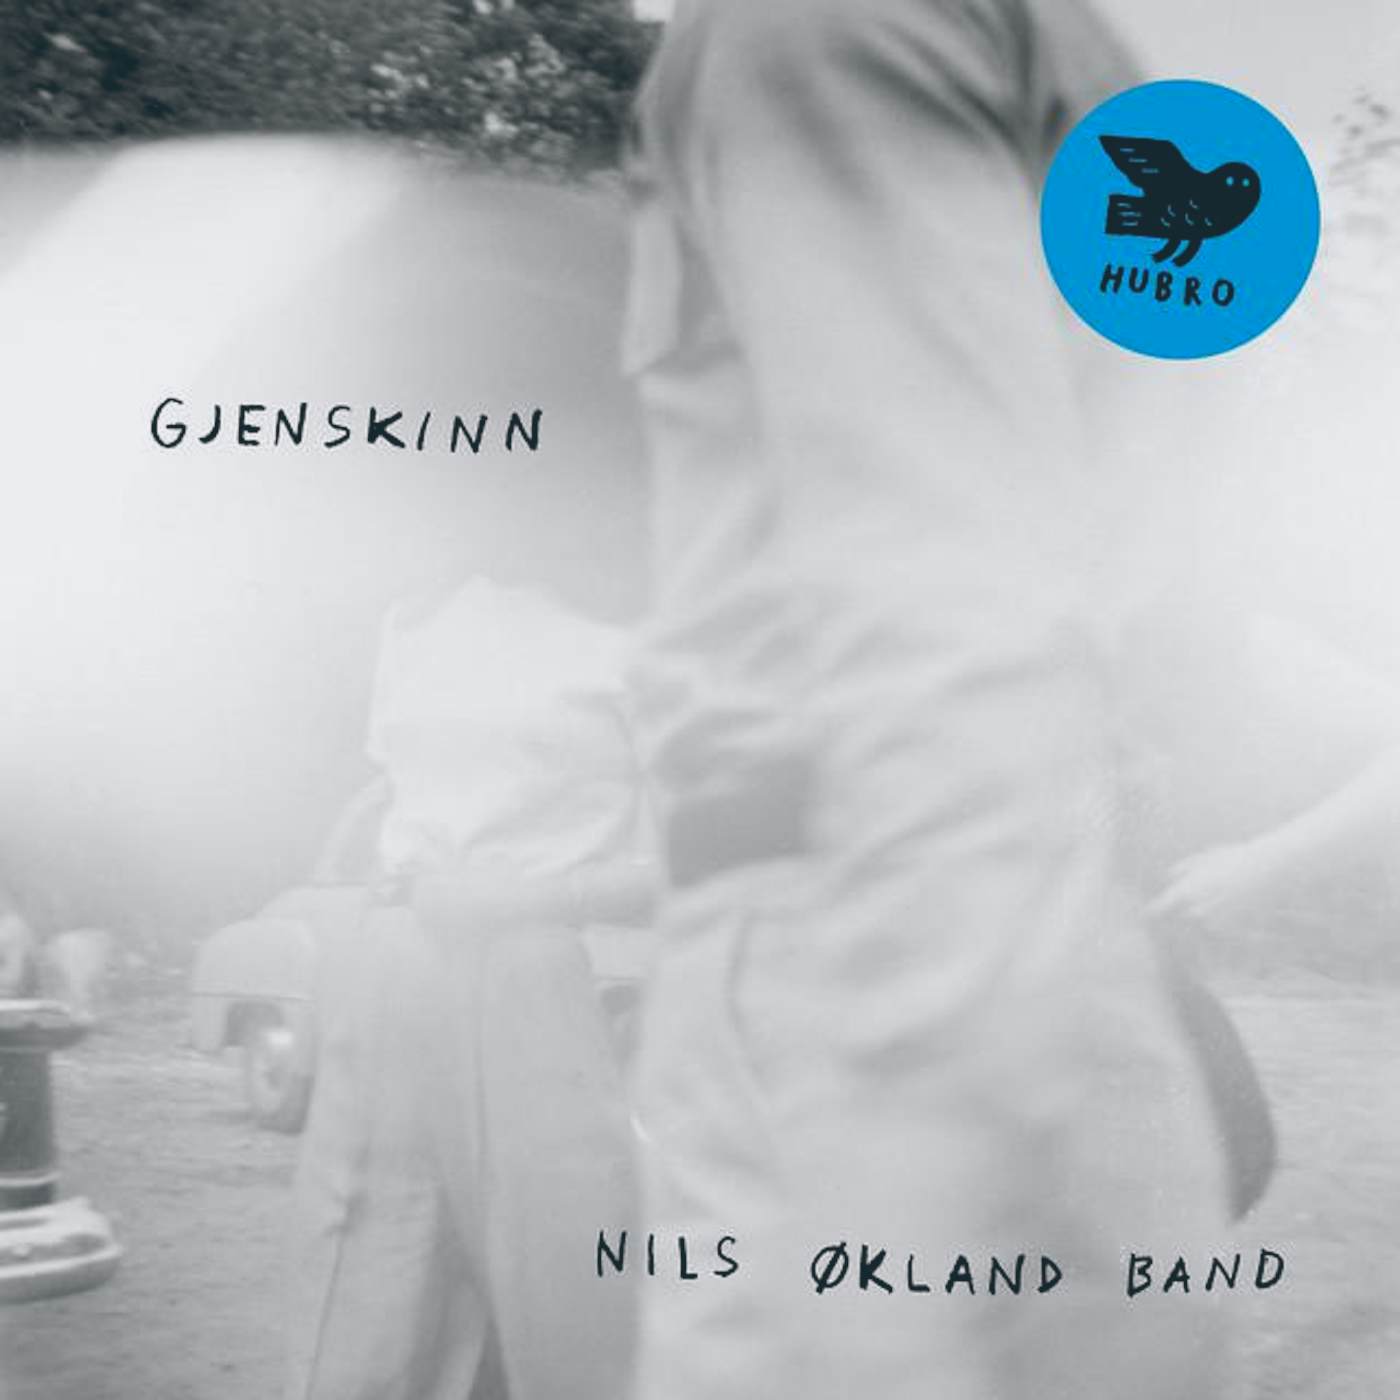 Nils Band Okland